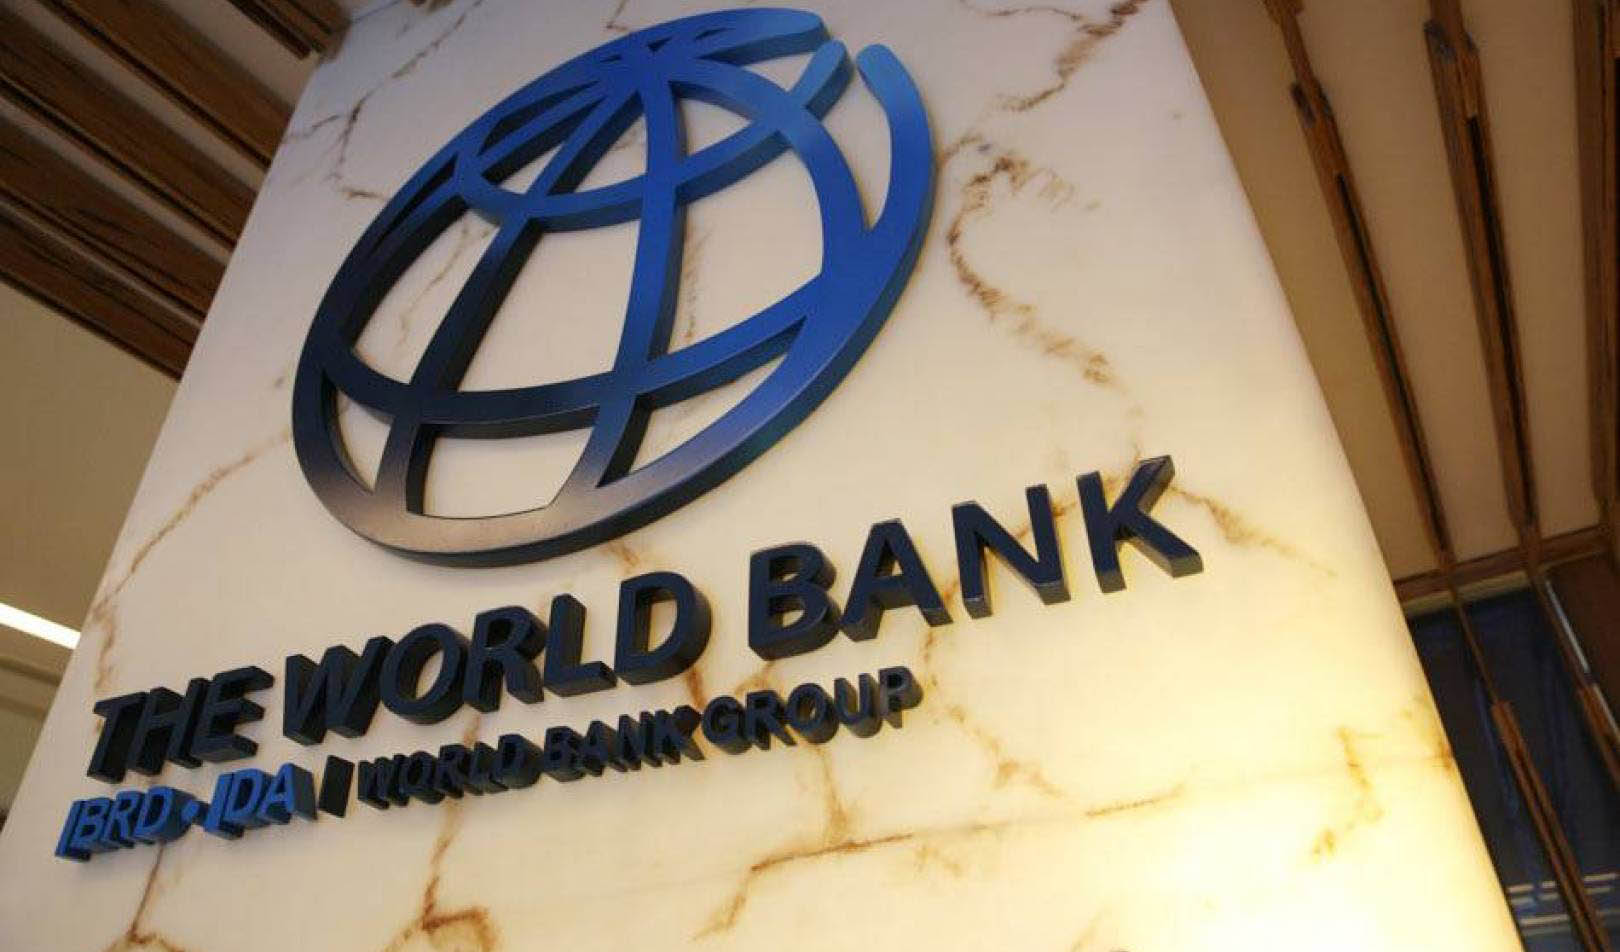 بانک جهانی برآورد رشد اقتصادی ایران را افزایش داد/ رشد اقتصادی ایران 3.1 درصد می شود